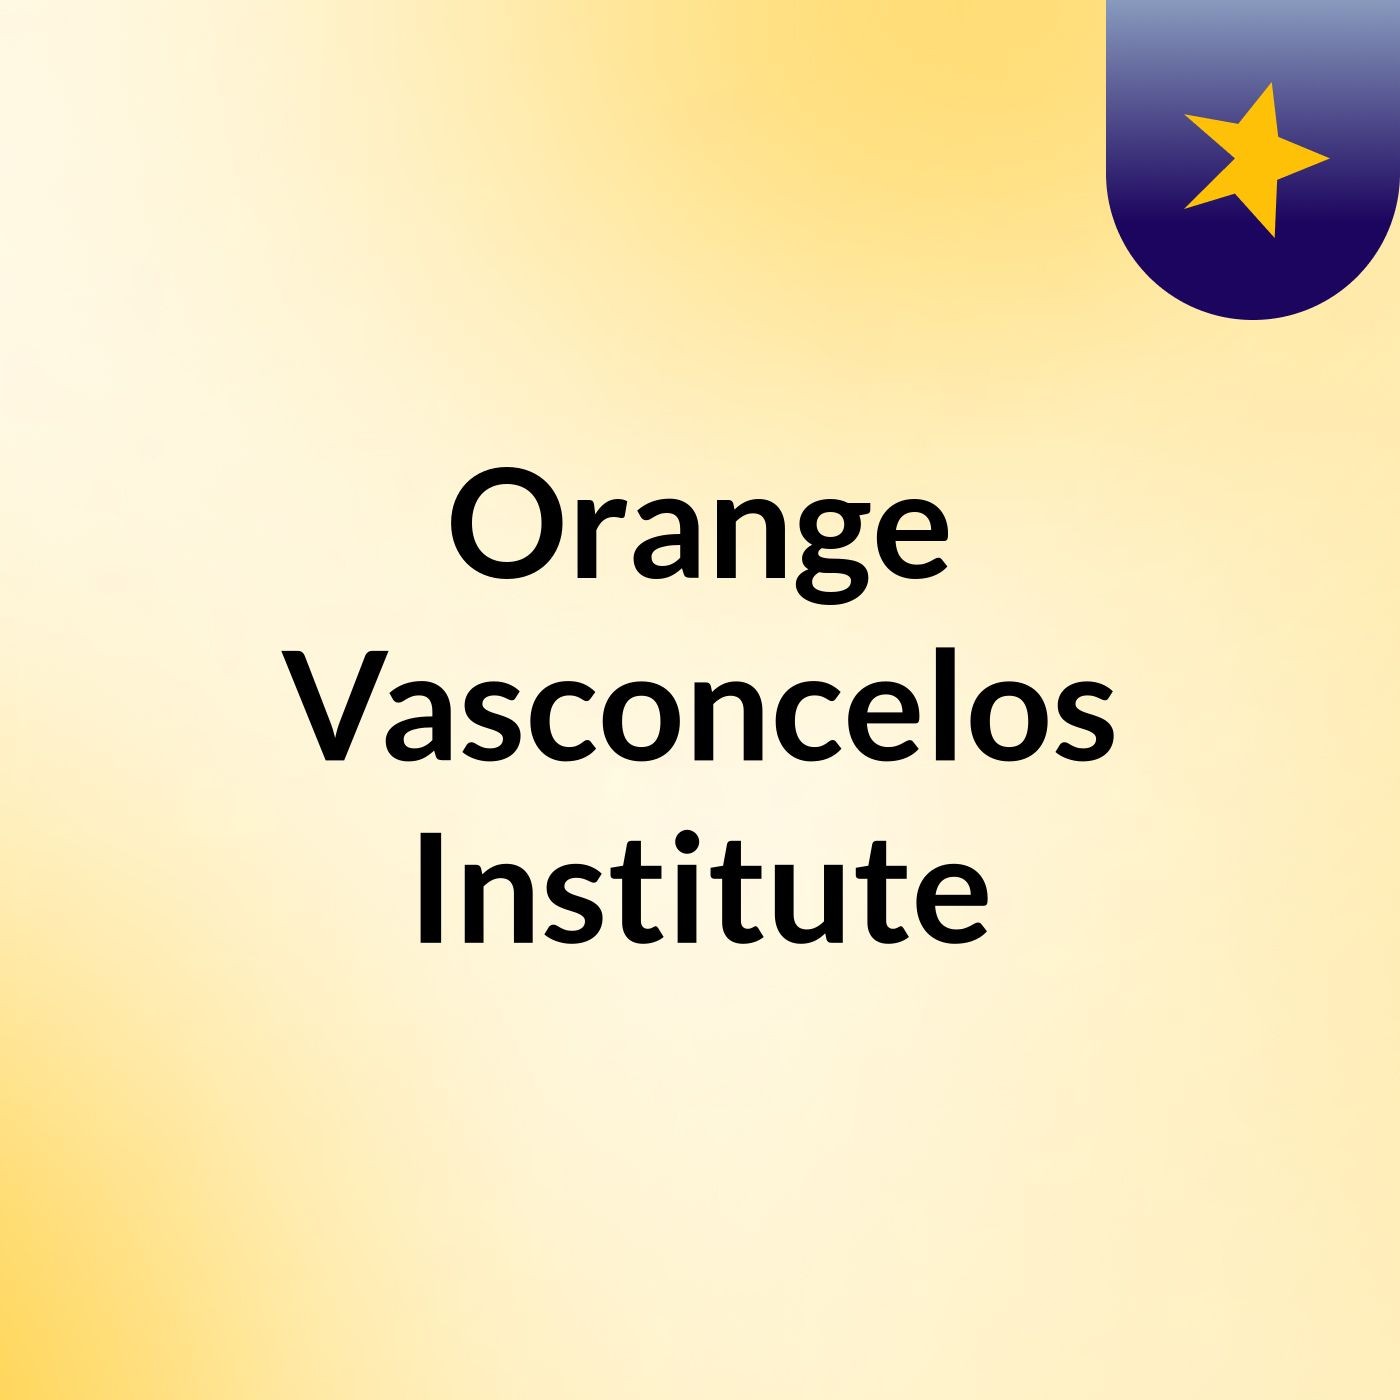 Orange Vasconcelos Institute